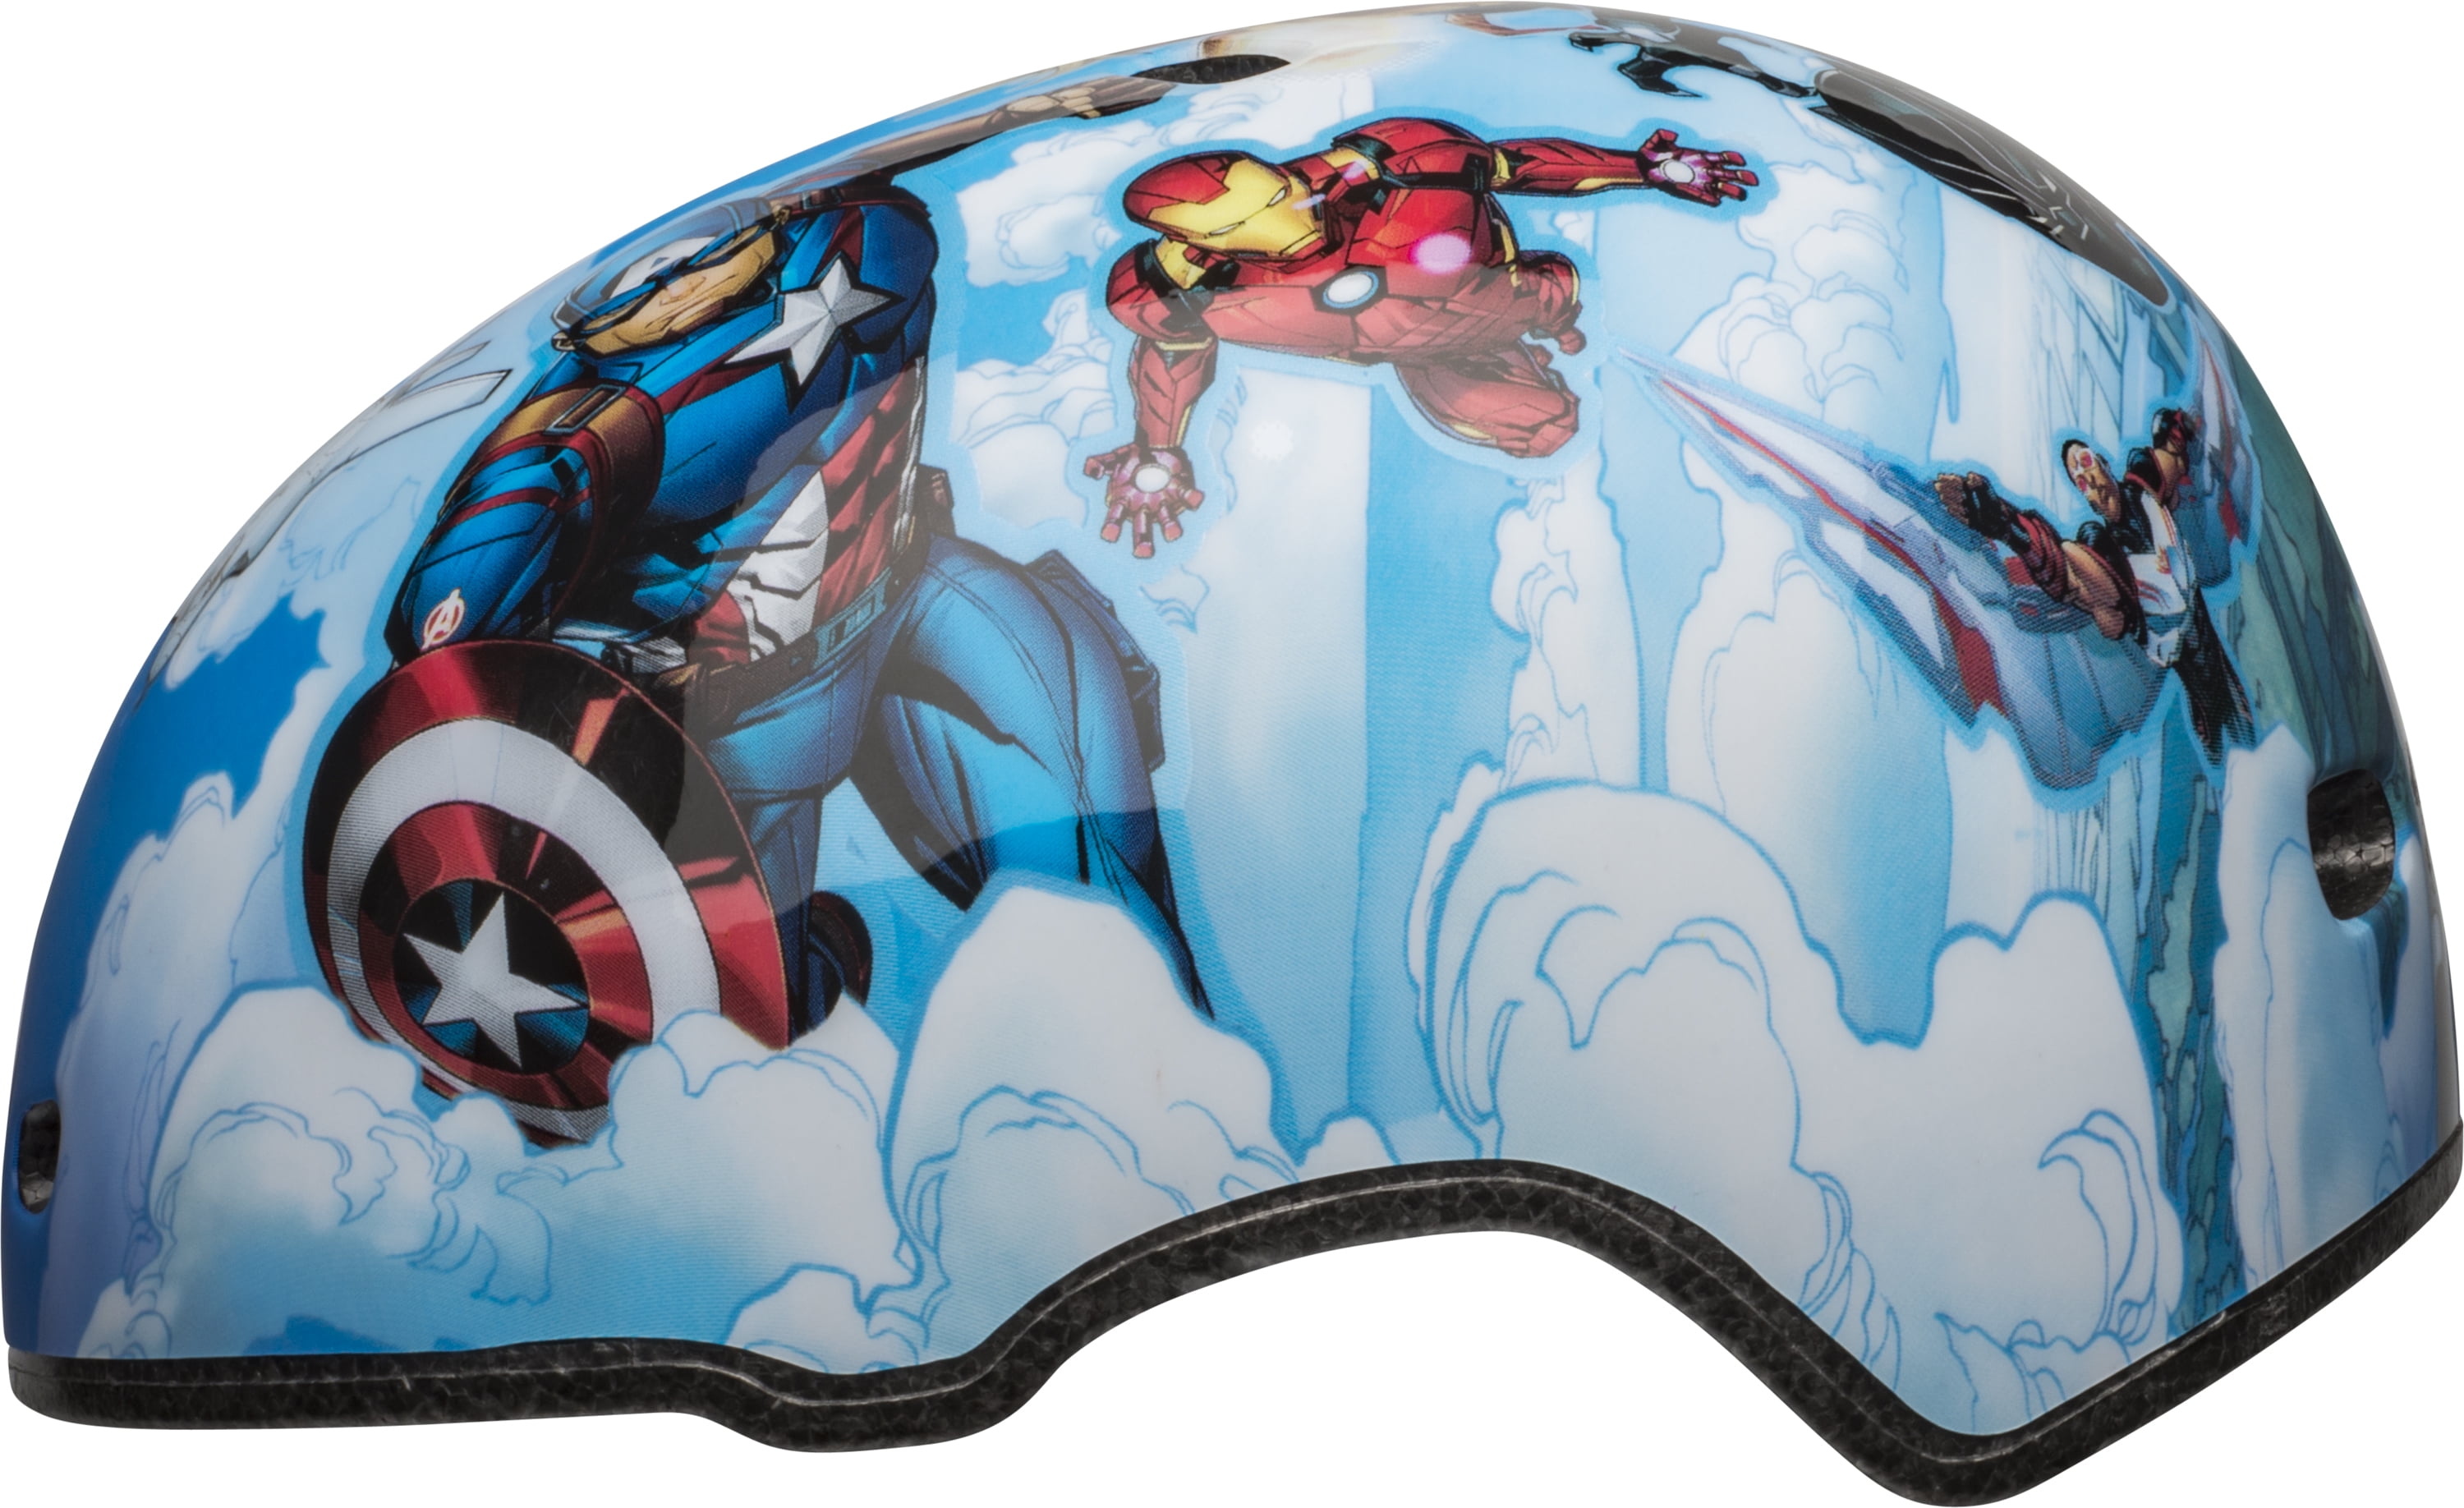 BELL Avengers Child Bike Helmet 